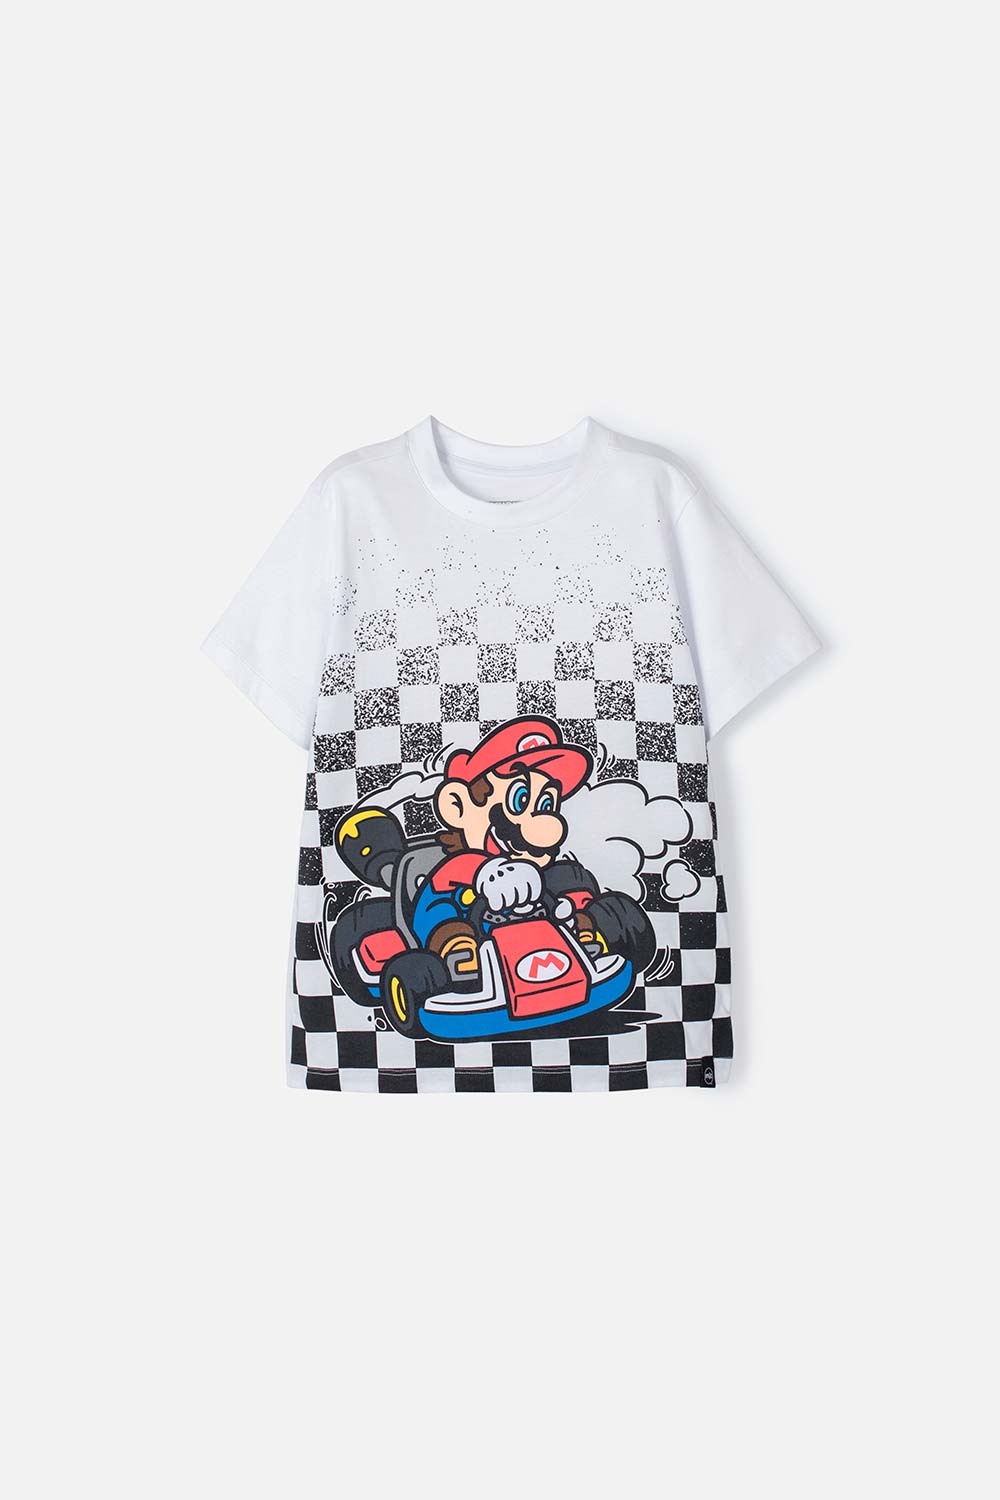 Camiseta de Mario Bros blanca con estampado desvanecido para niño 4-0